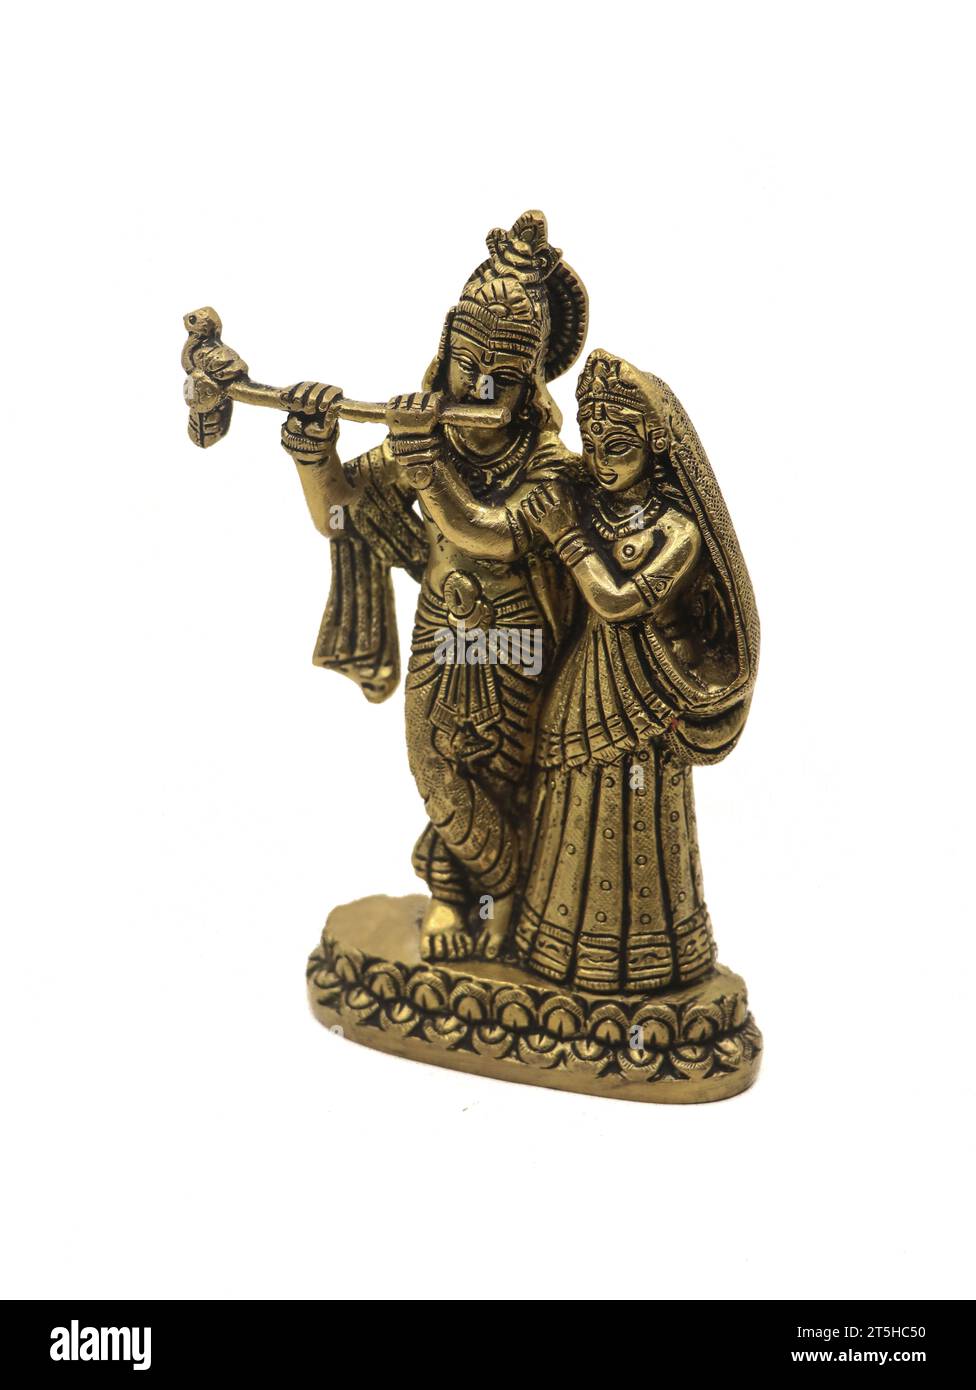 splendida scultura in bronzo del signore krishna e della moglie radha devi isolata su uno sfondo bianco Foto Stock